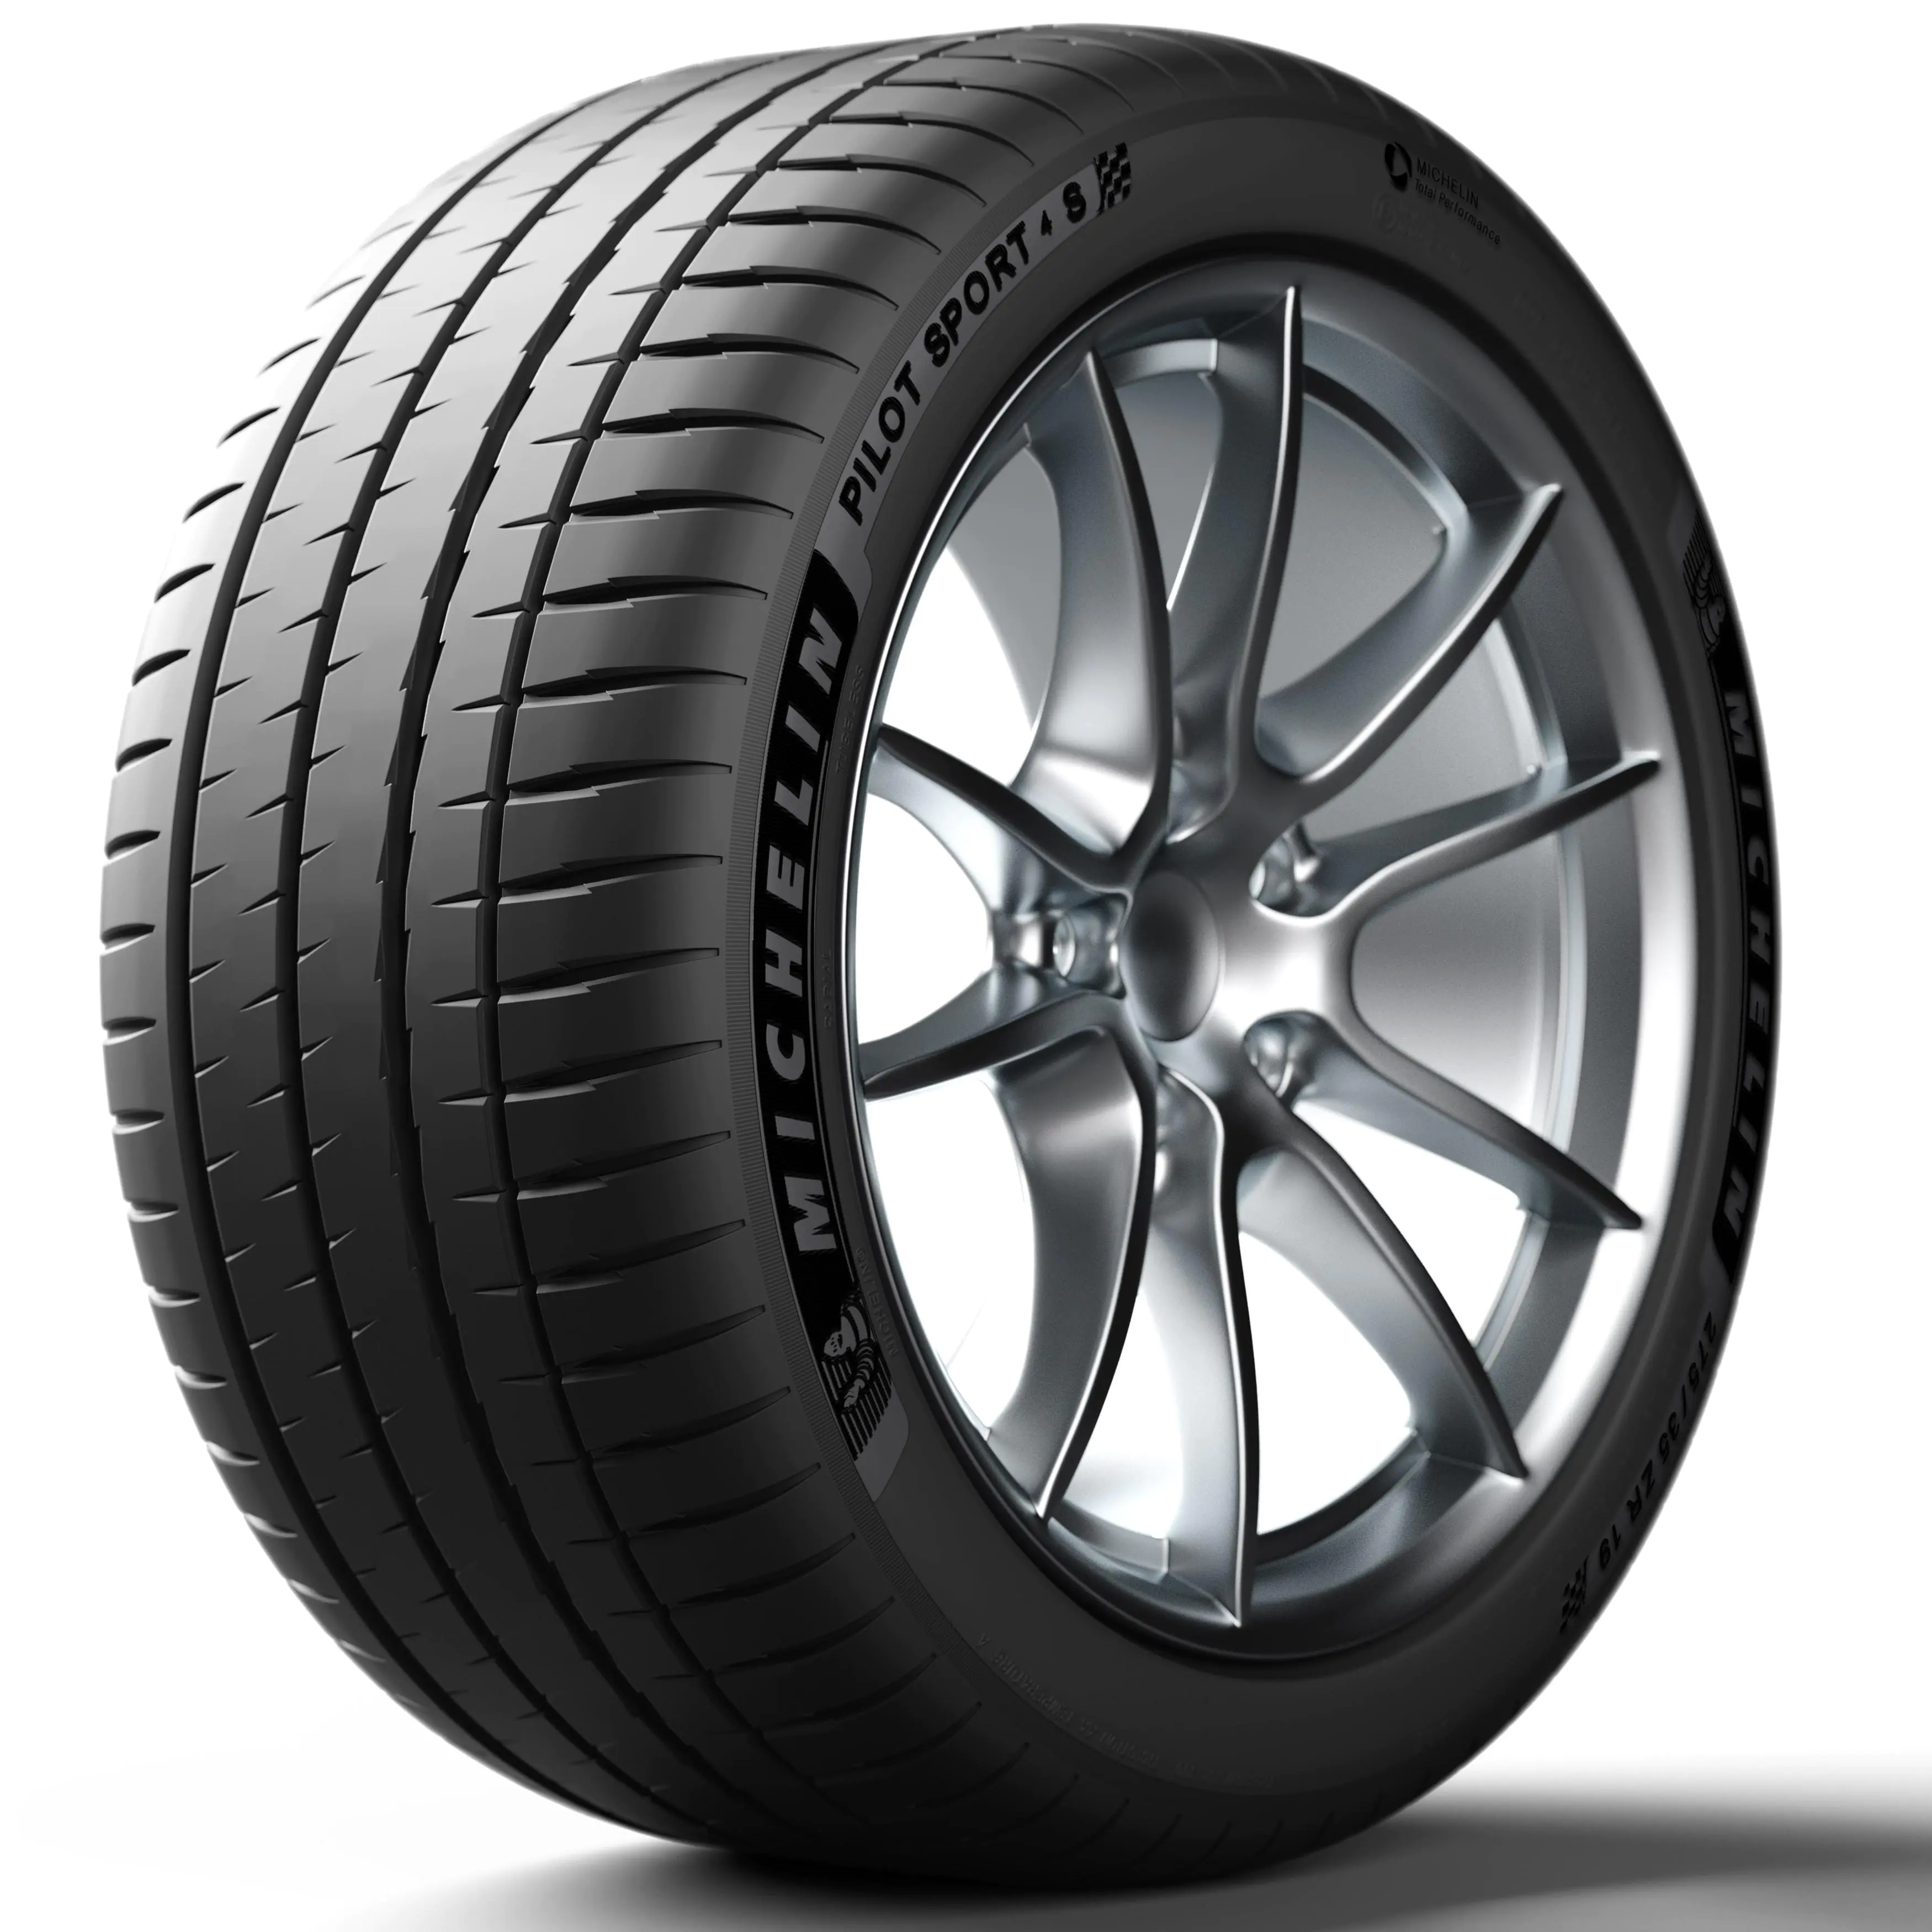 Michelin Michelin 285/30 R20 99Y P.SPORT 4 S XL pneumatici nuovi Estivo 